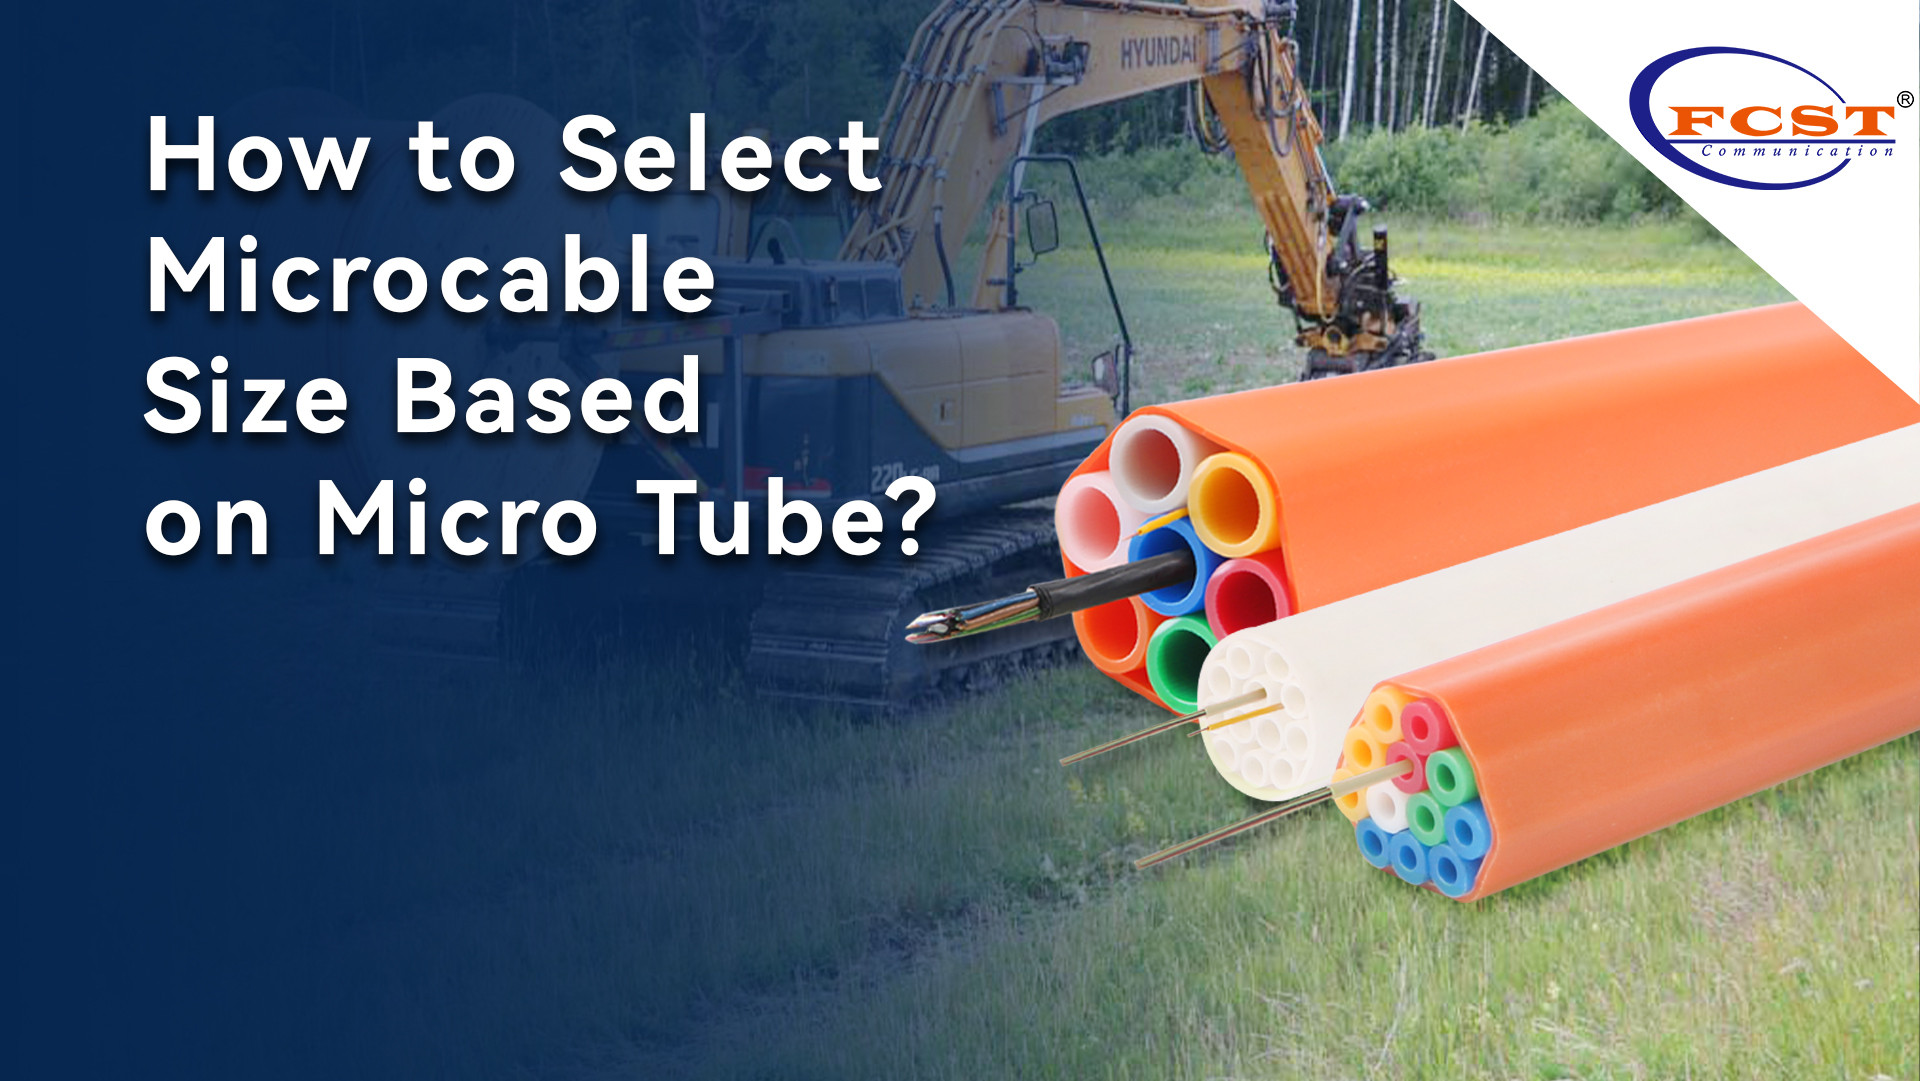 Como selecionar o tamanho microcável com base no micro tubo?